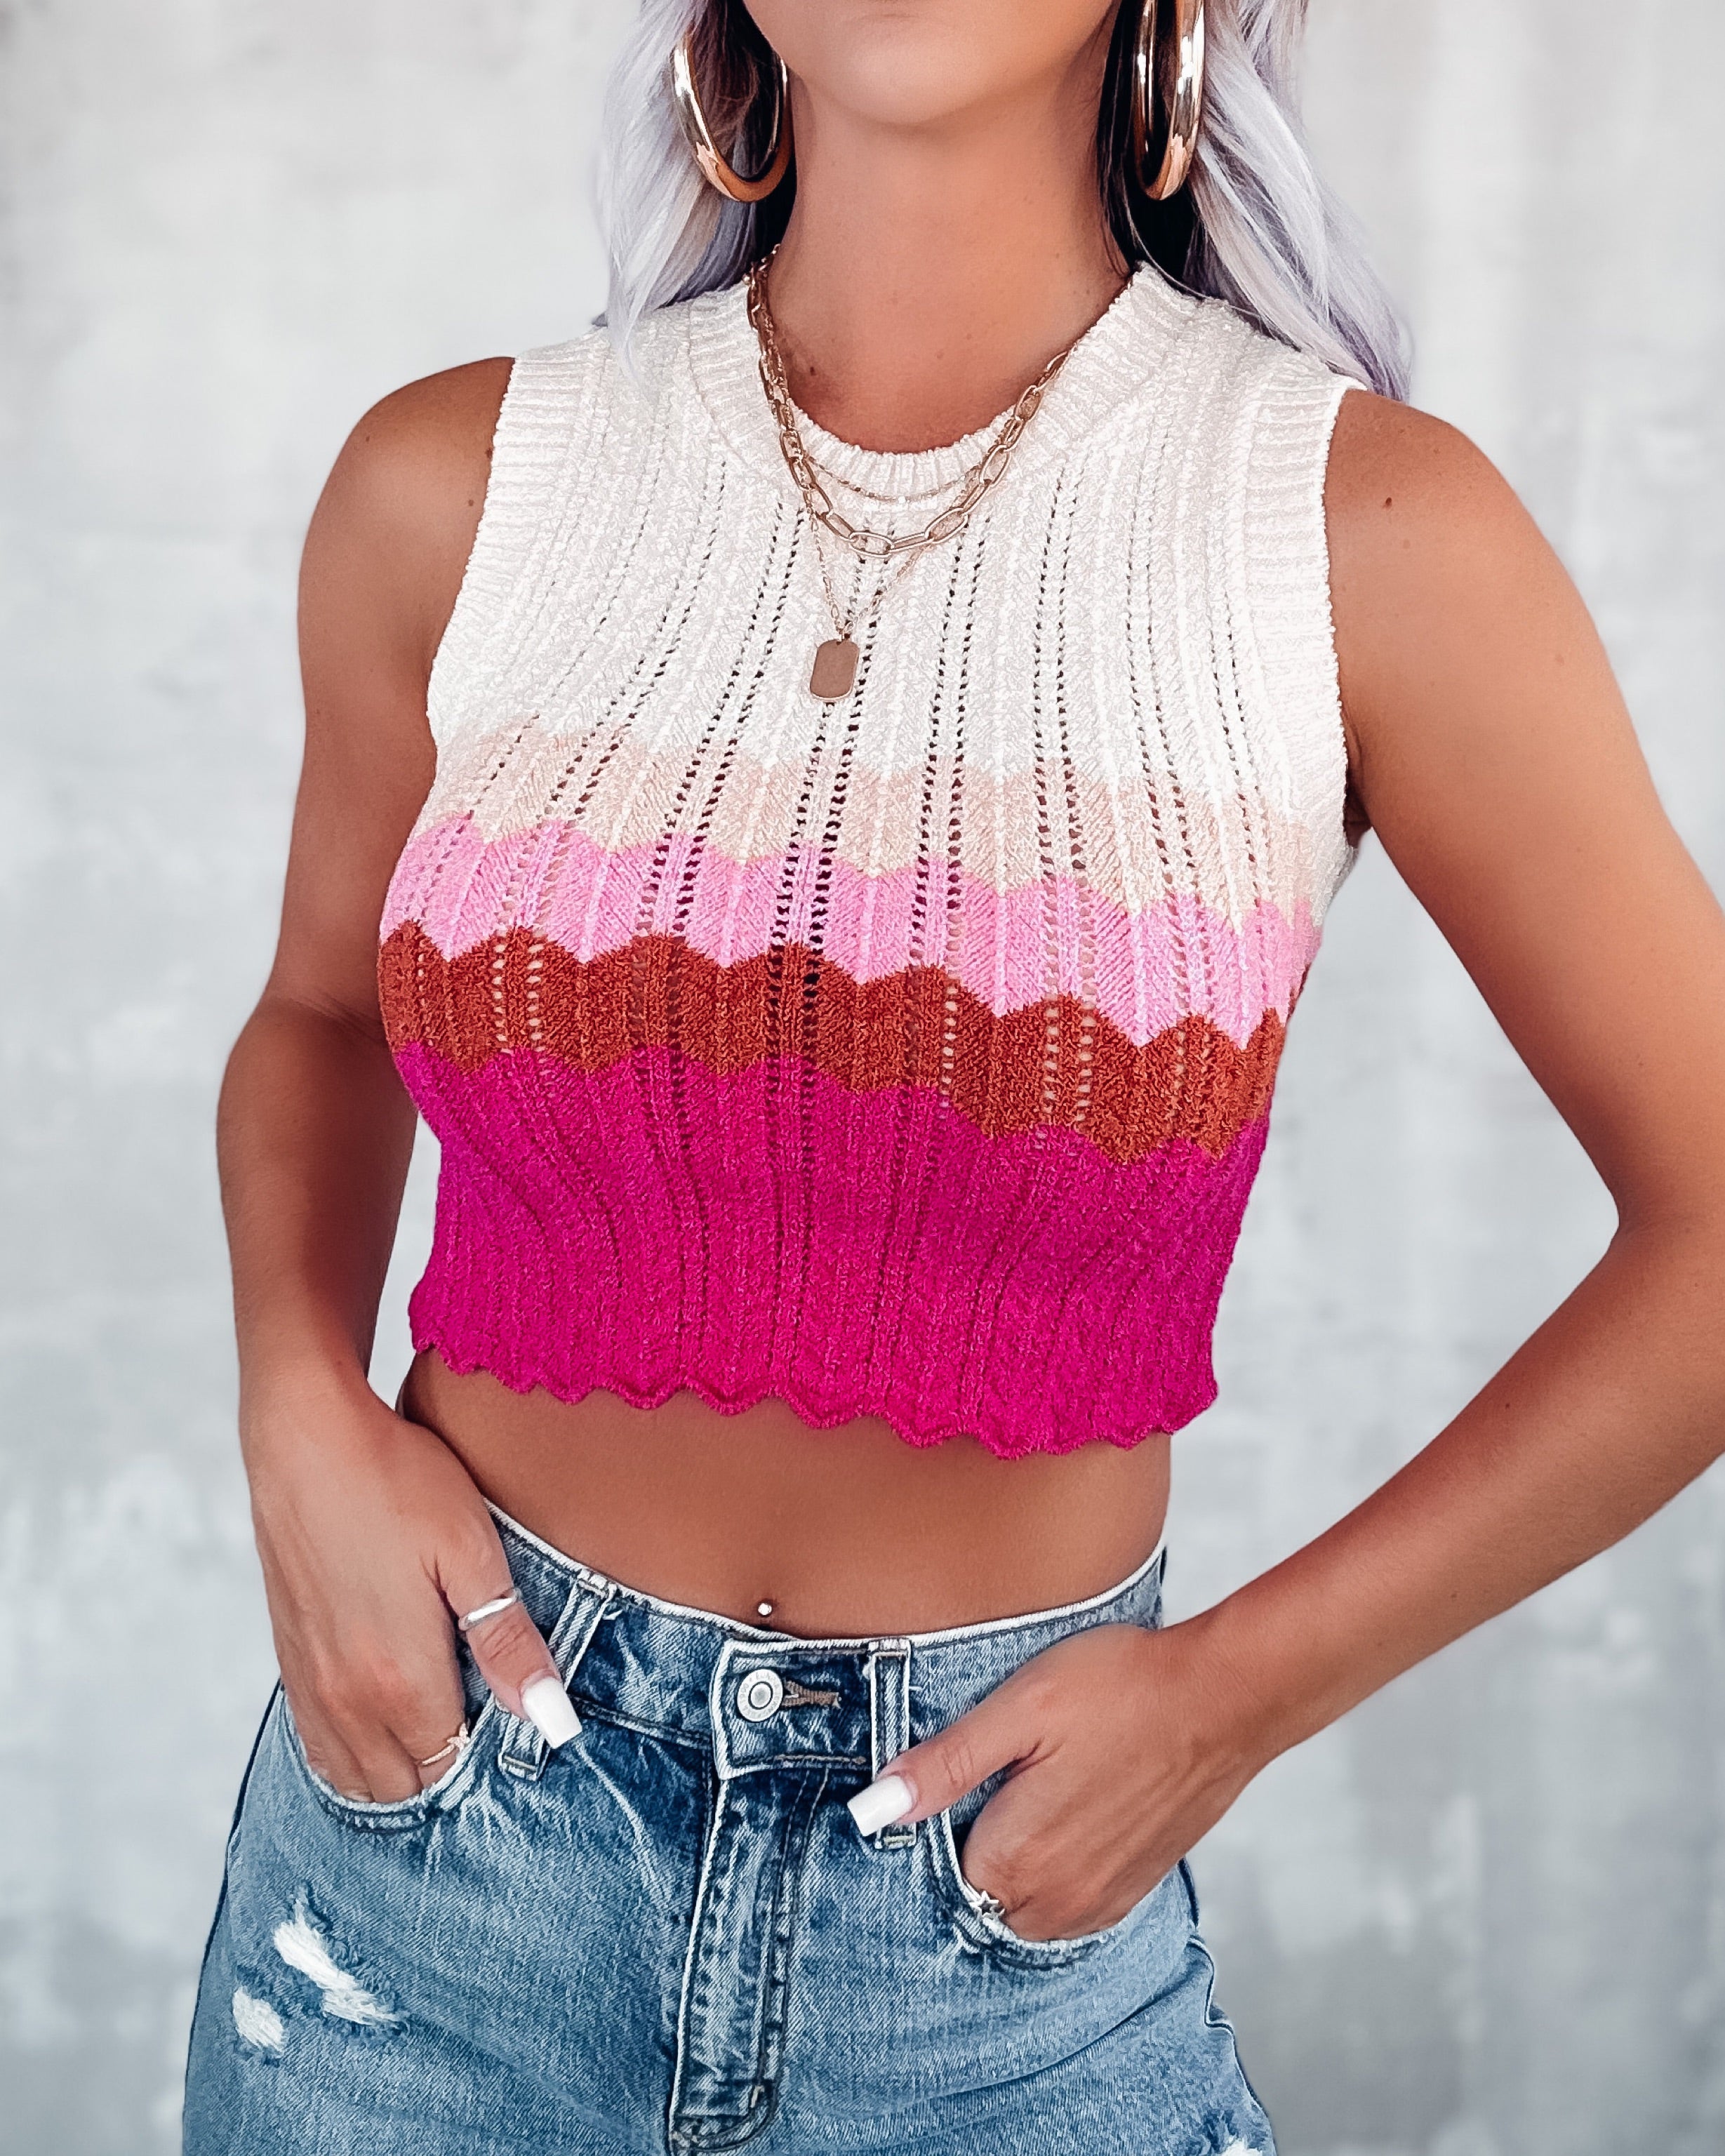 Knit Kween Crop Top - Pink/Cream